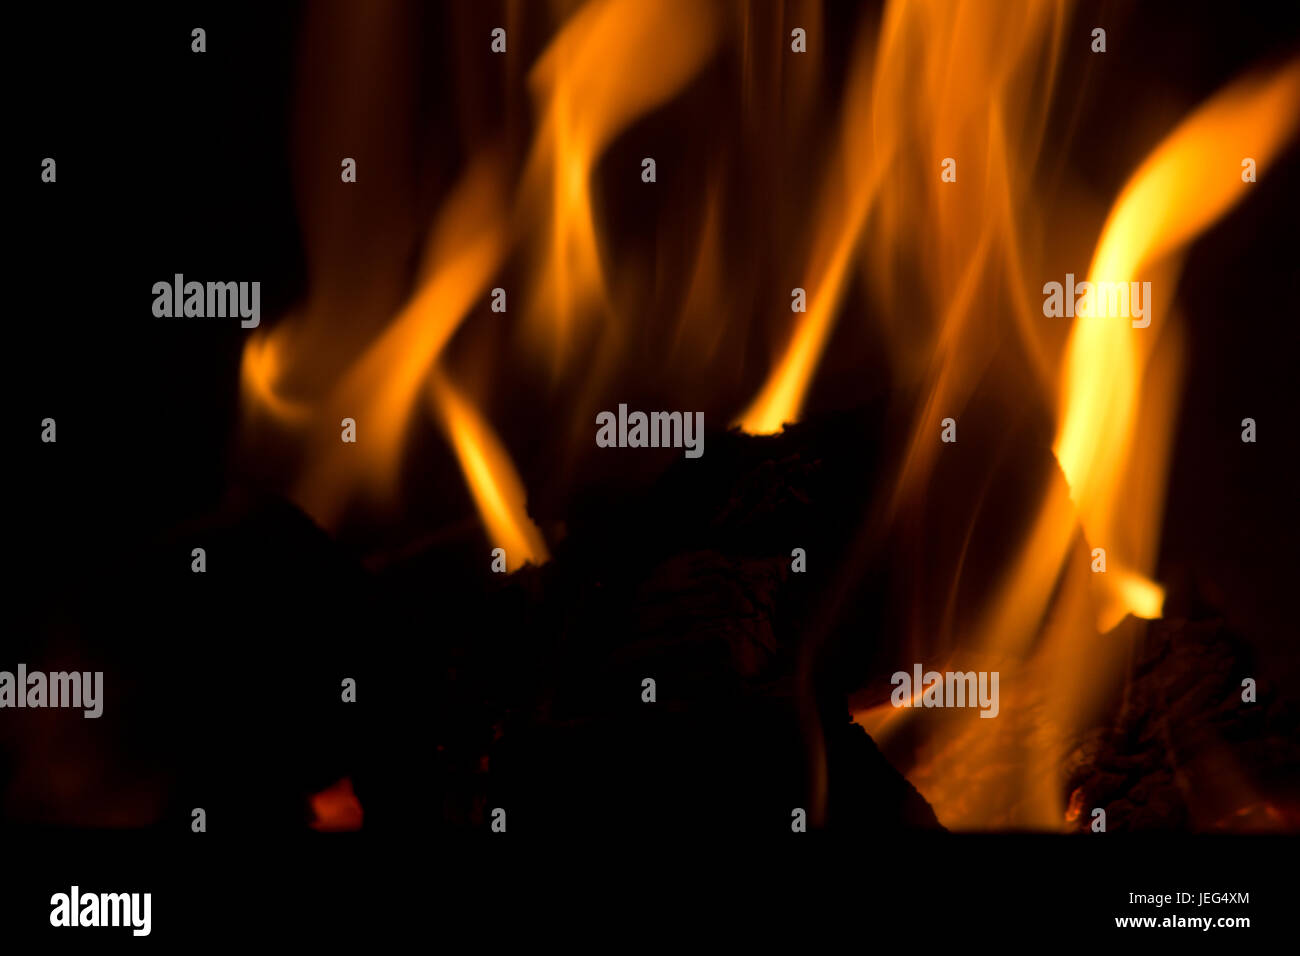 Image abstraite de flammes contre une backgrouind sombre. En utilisant votre imagination, vous pouvez presque voir les formes des créatures différentes dans l'incendie. Banque D'Images